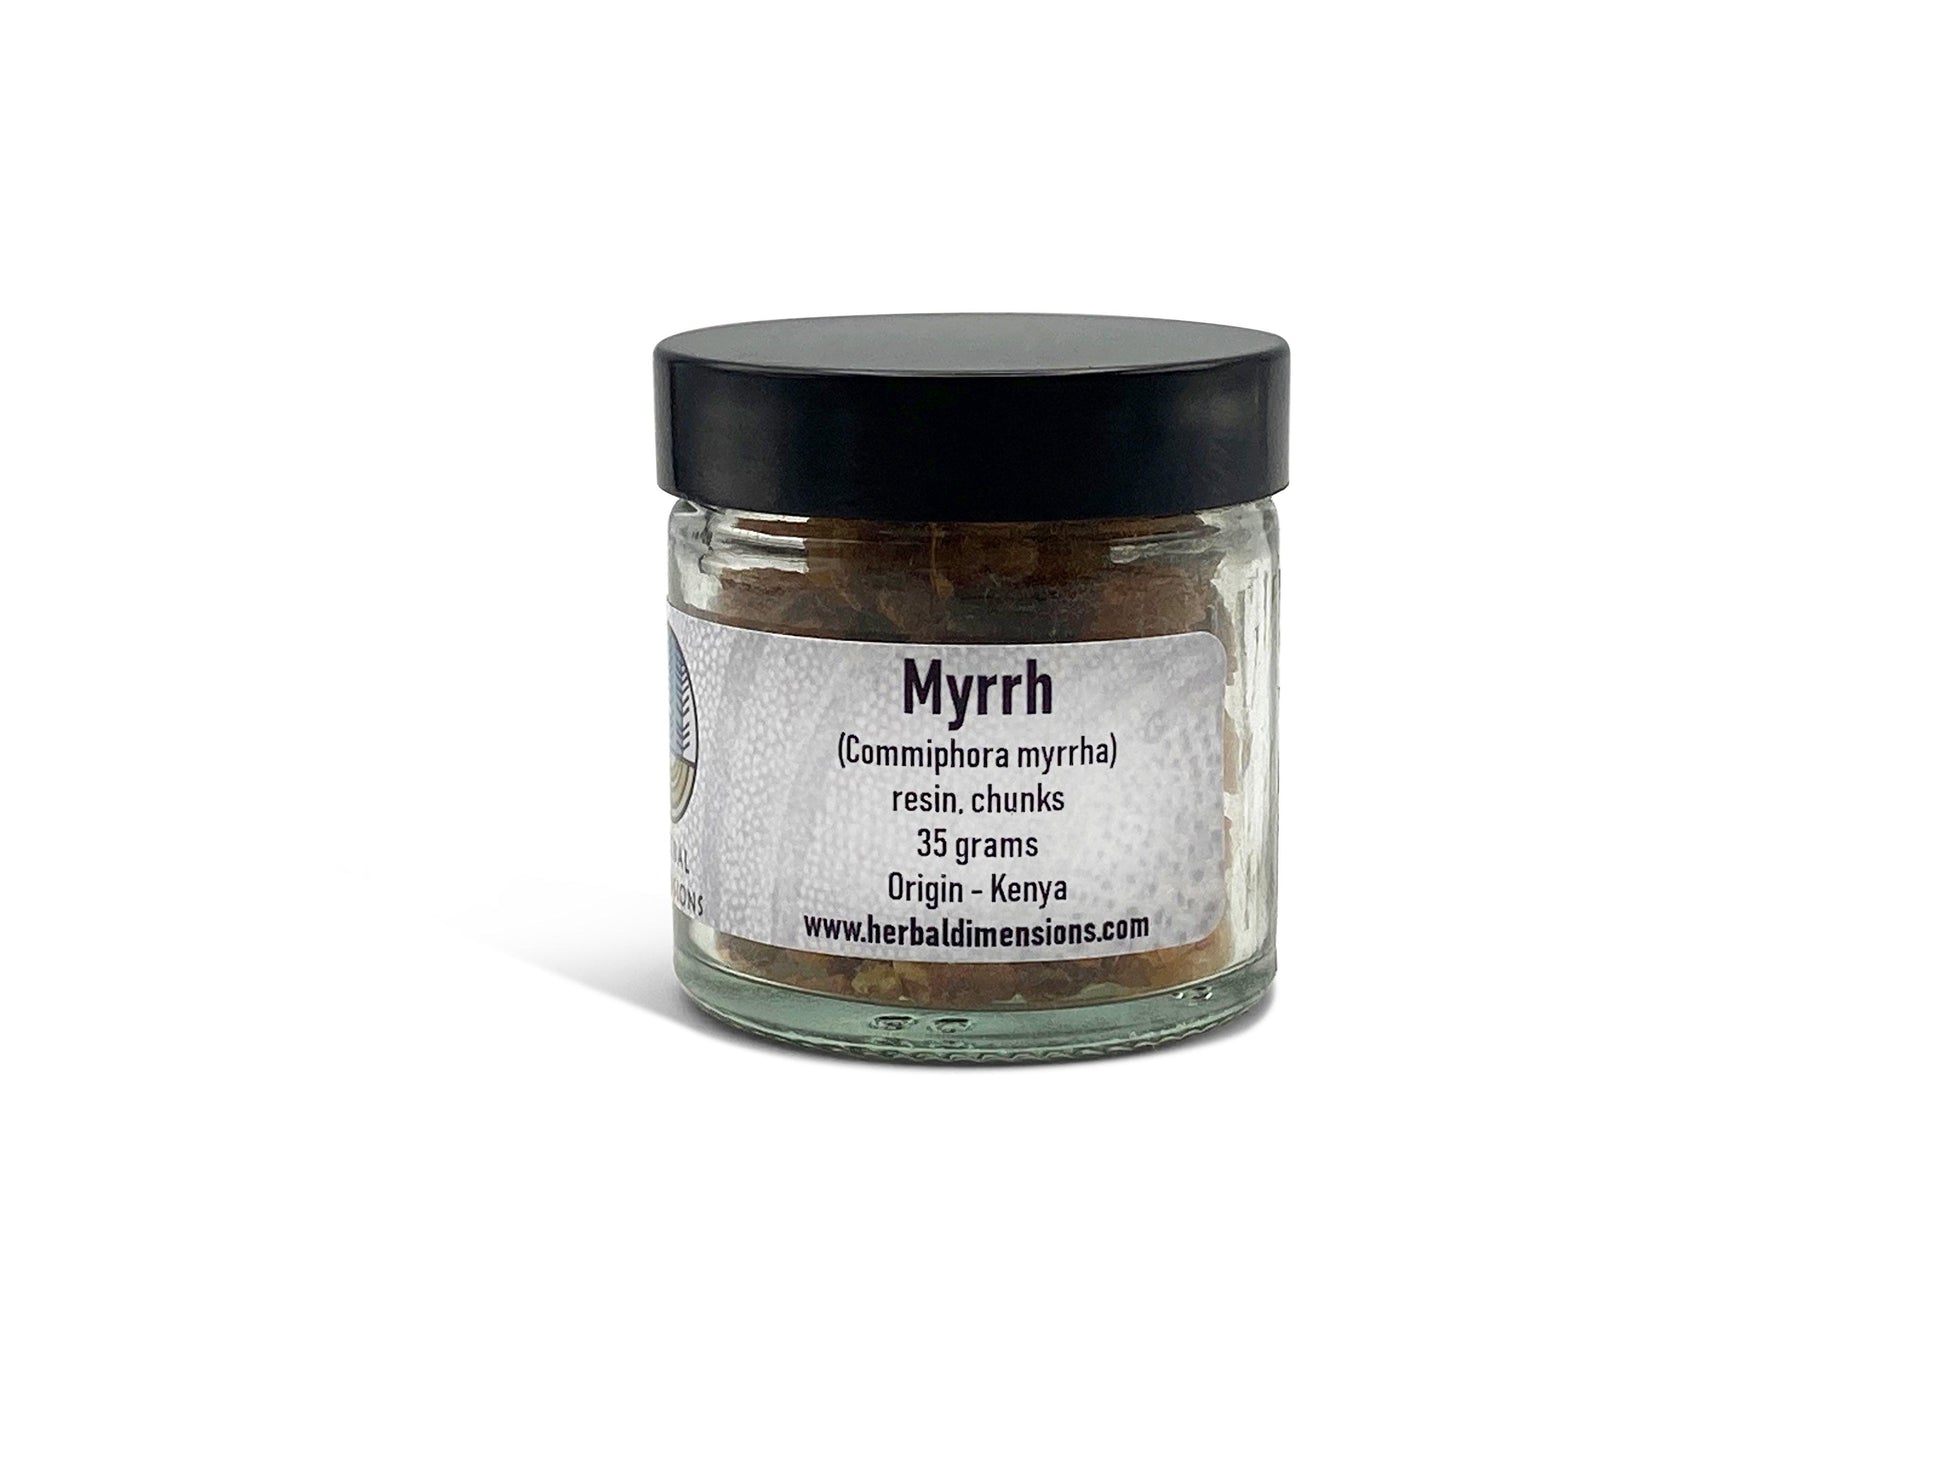 Myrrh in jars